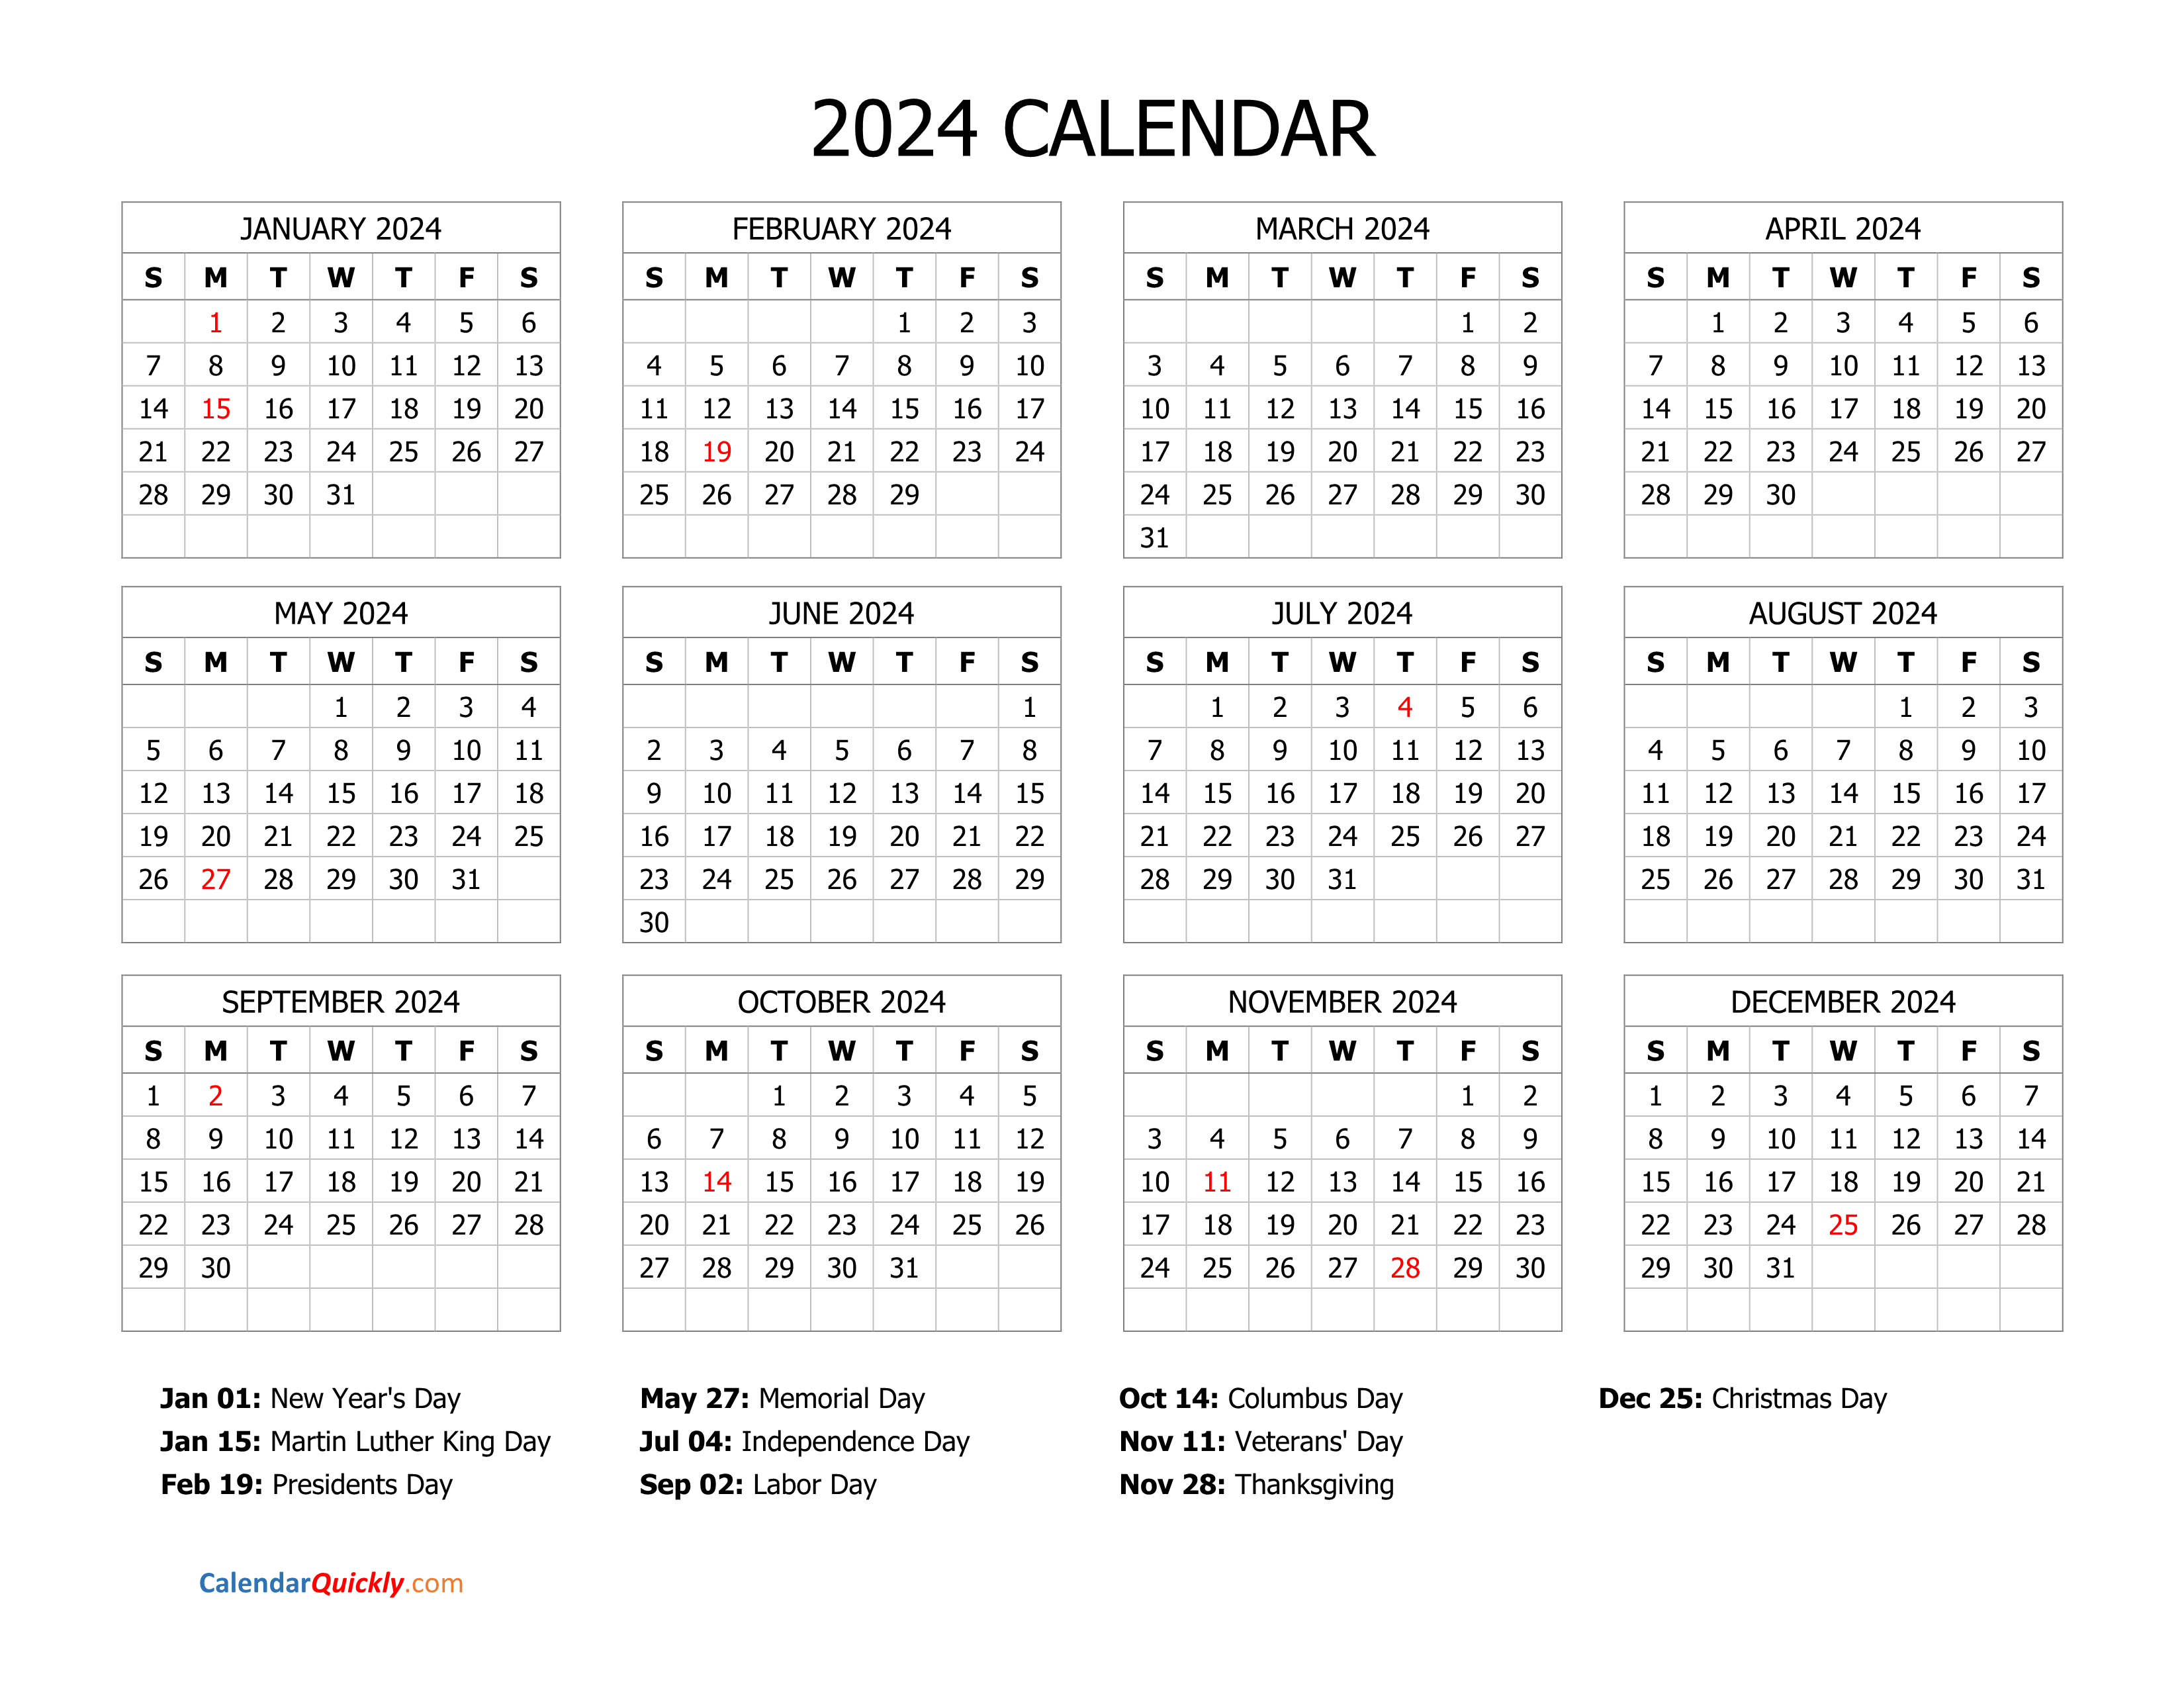 2024 Calendar With Holidays Calendar Quickly Gambaran